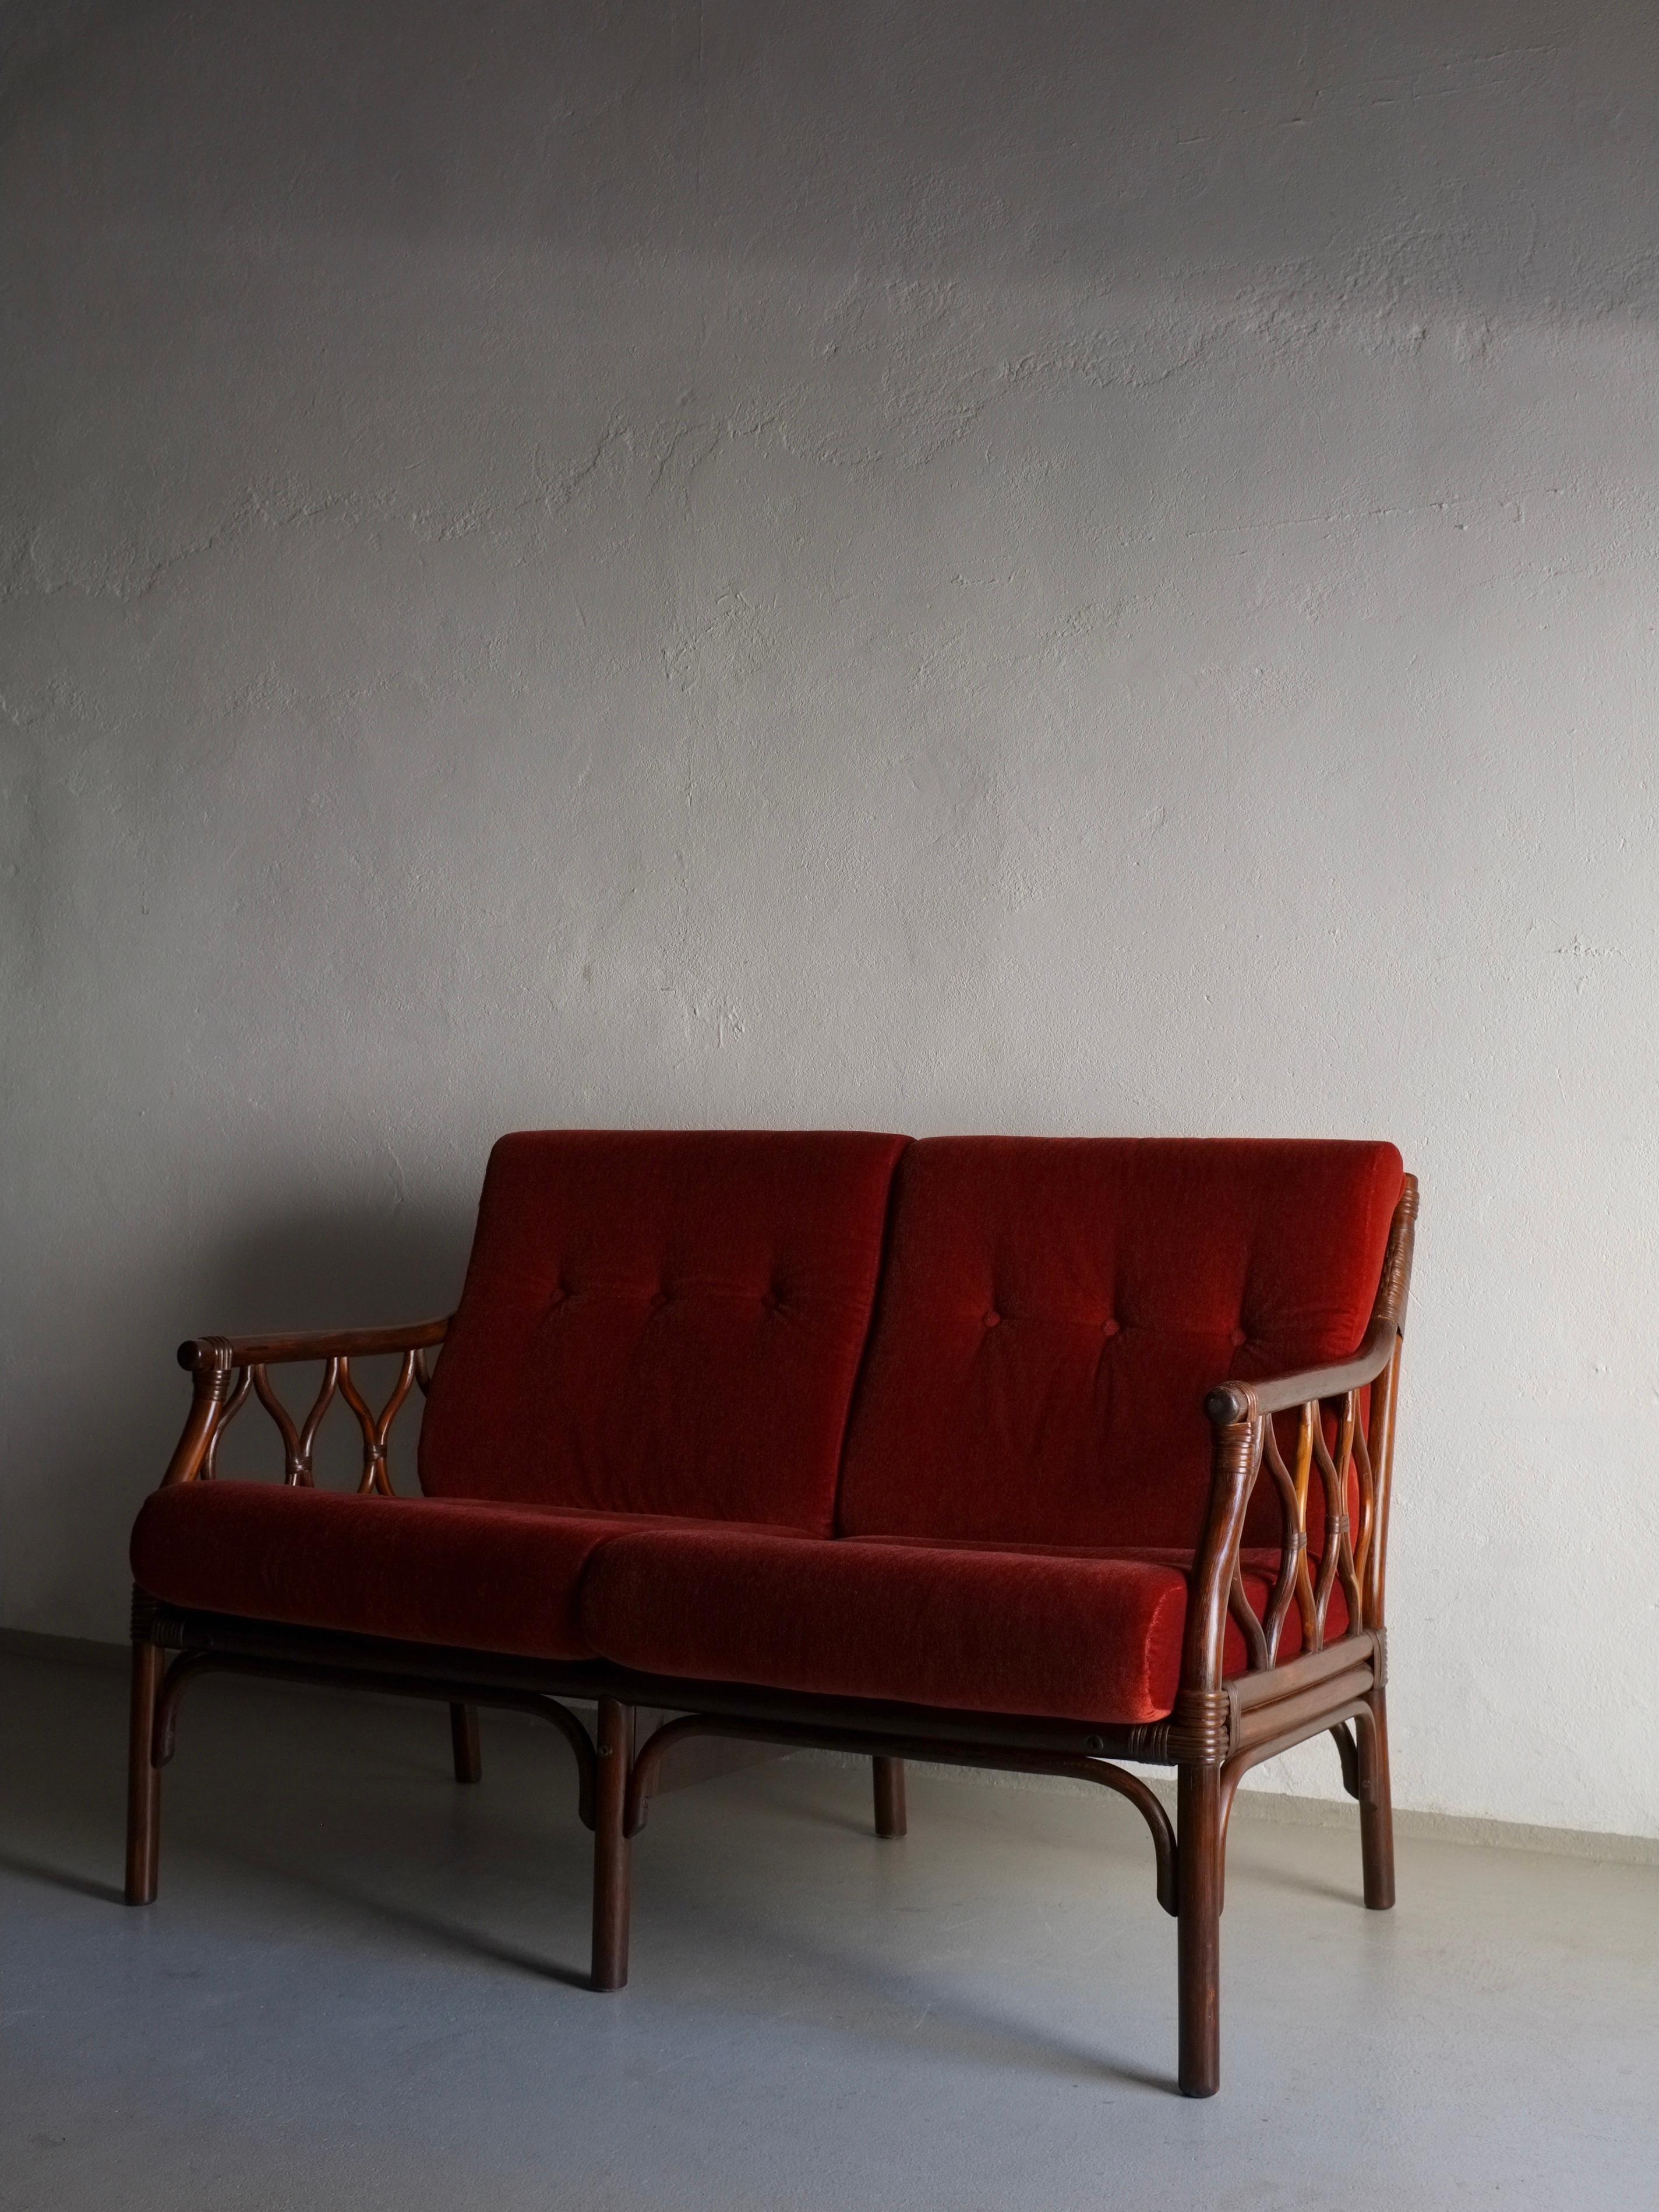 Canapé 2 places en rotin foncé avec cautions en velours rouge-orange vermillon. Un canapé 3 places, une chaise longue et une table basse de cet ensemble sont disponibles.

H(total/cadre) 84/77 cm, h(assise) 44 cm, L 122 cm, P 75 cm